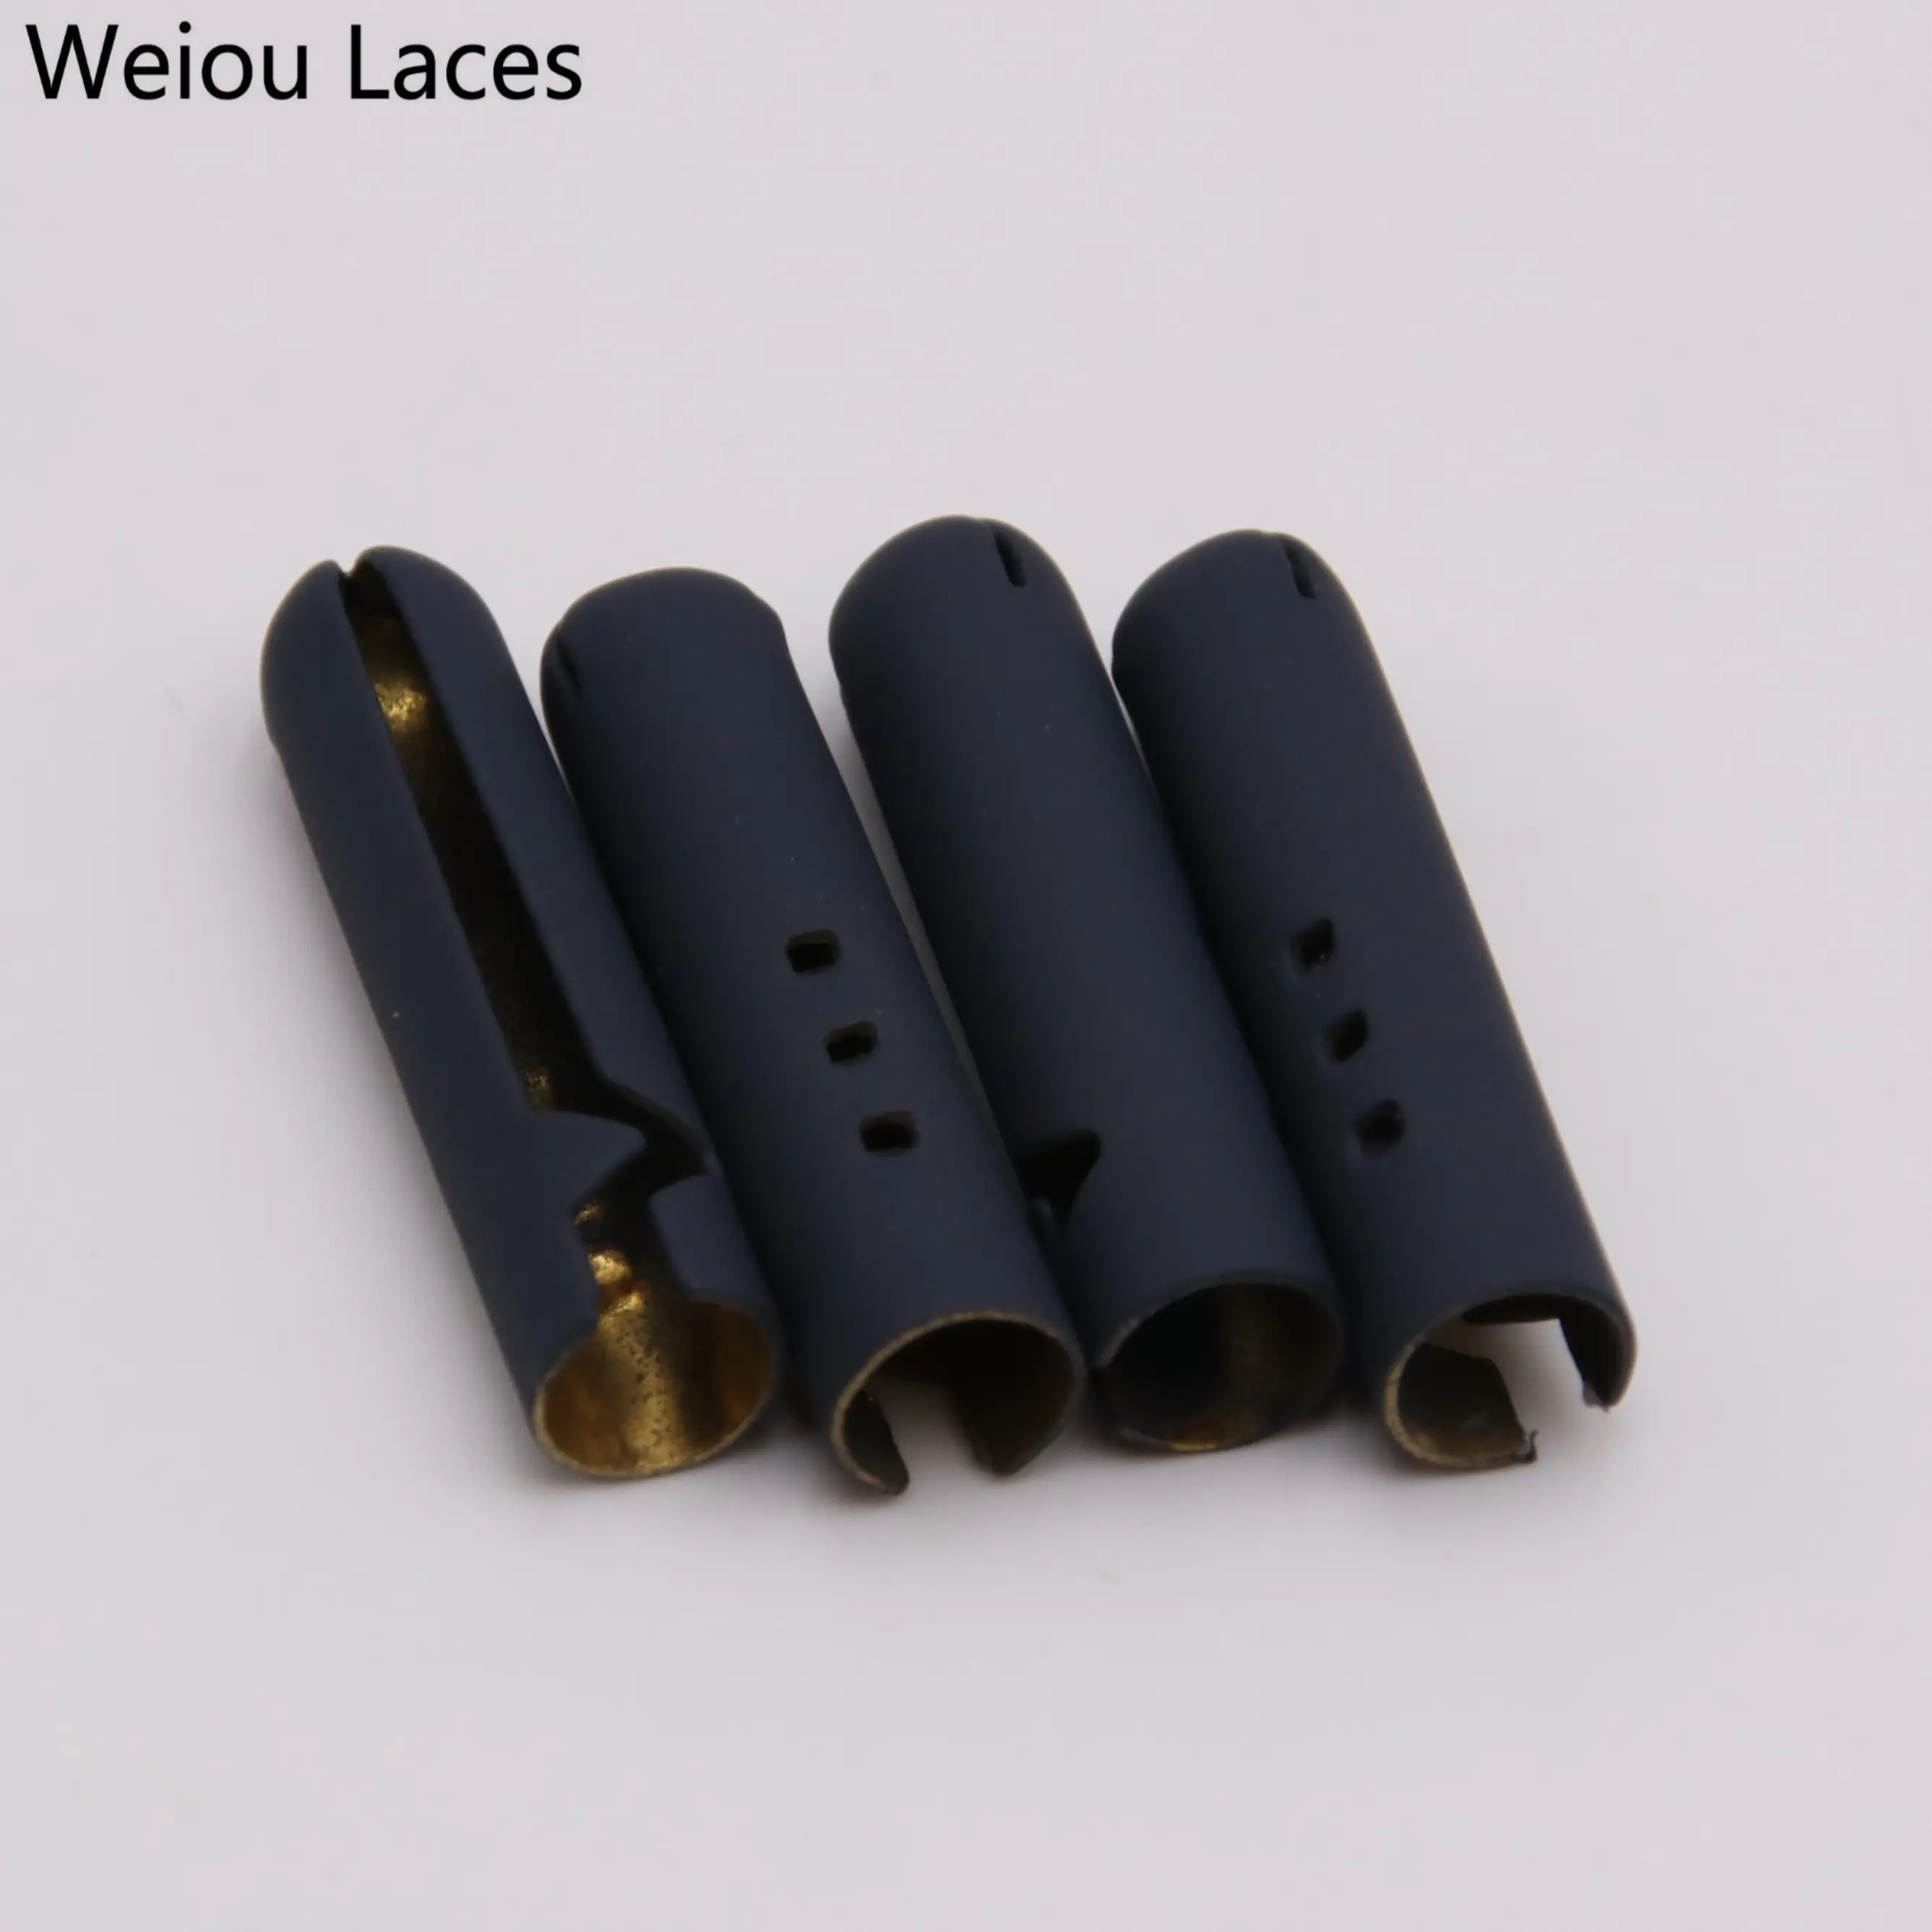 Weiou — lacets exclusifs en métal, décoration pour cordons et pointes de chaussures, 4.5x22mm